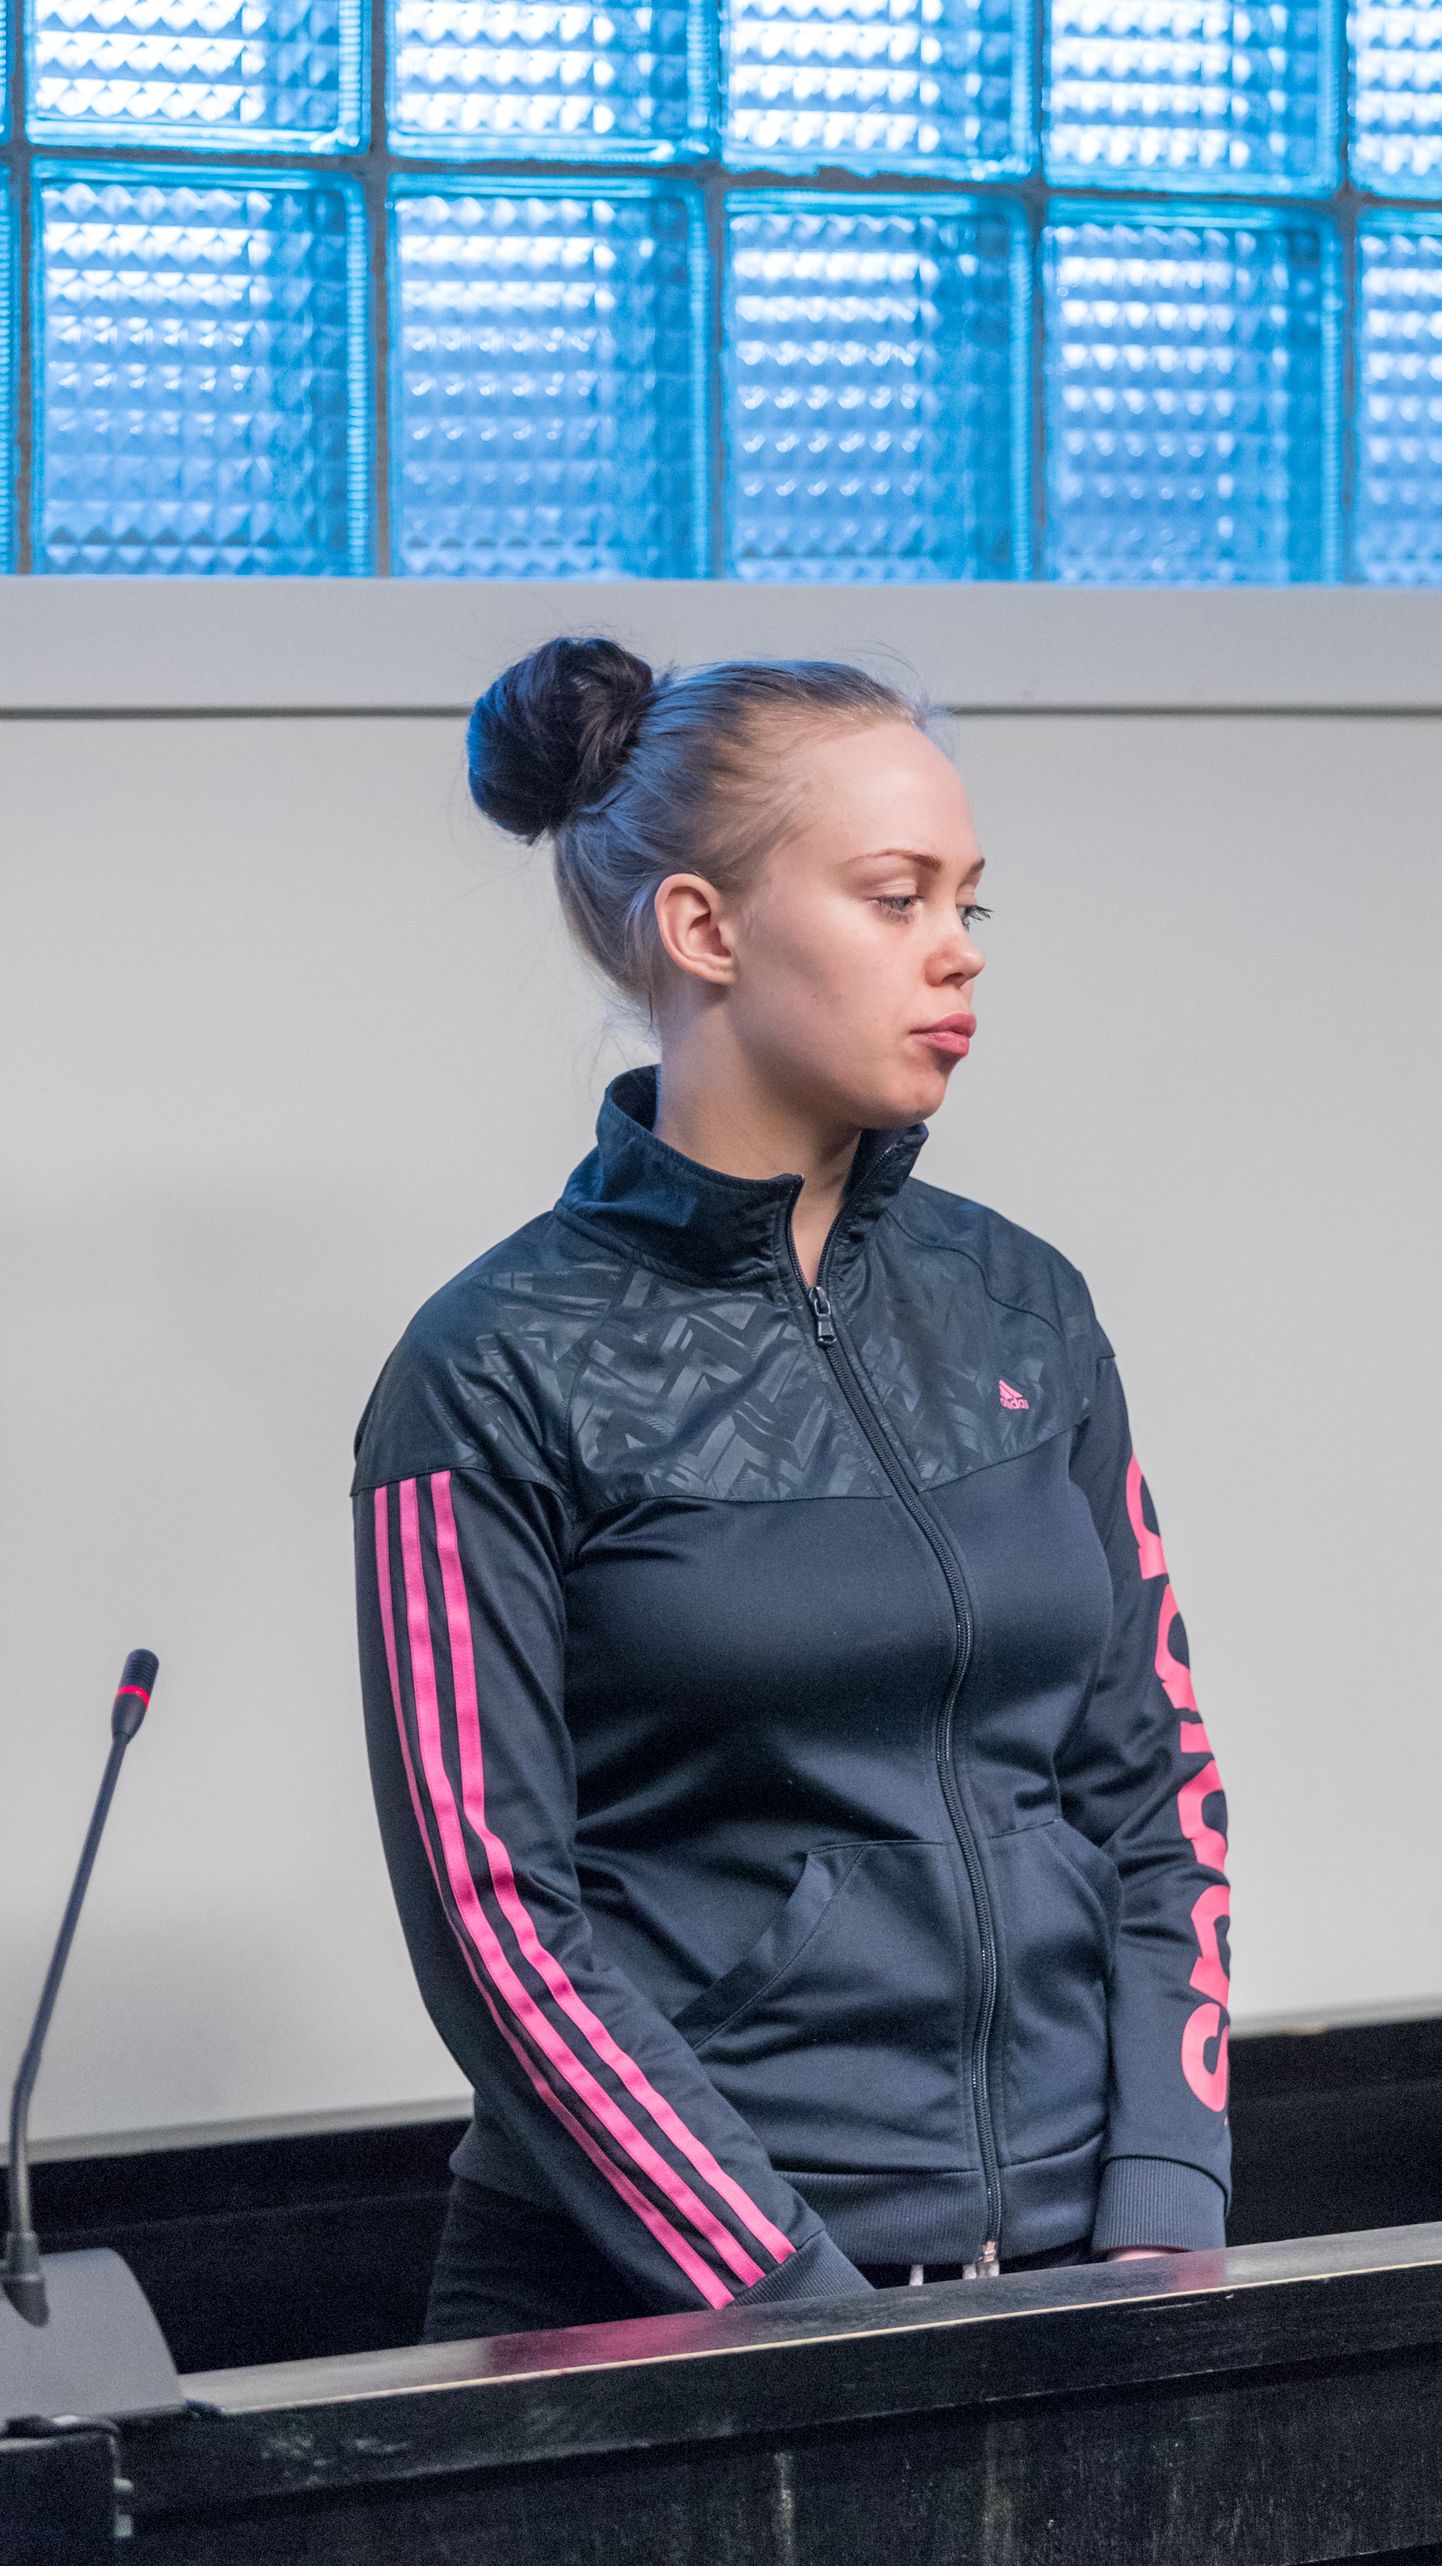 Kohtuistung Elizaveta Kapitonova üle seoses 22-aastase noormehe pussitamisega.